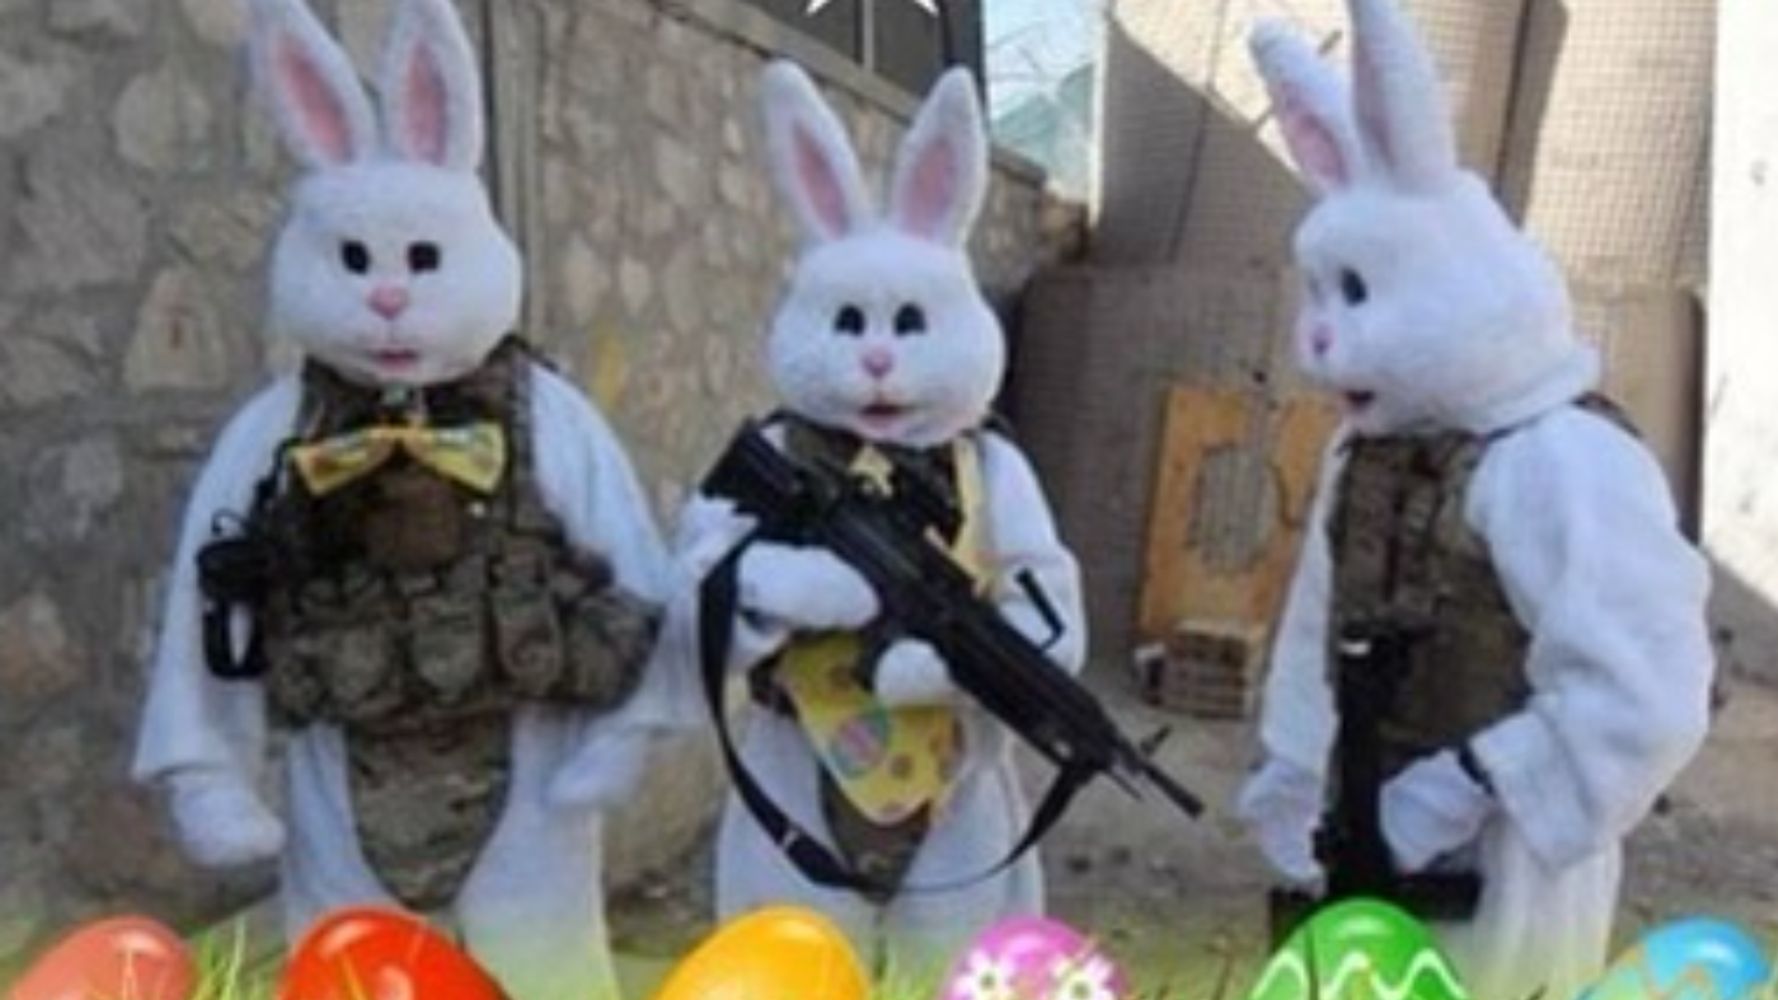 Donald Trump Jr. Posts Pic Of Armed Easter Bunnies; Twitter Critics Go Ballistic